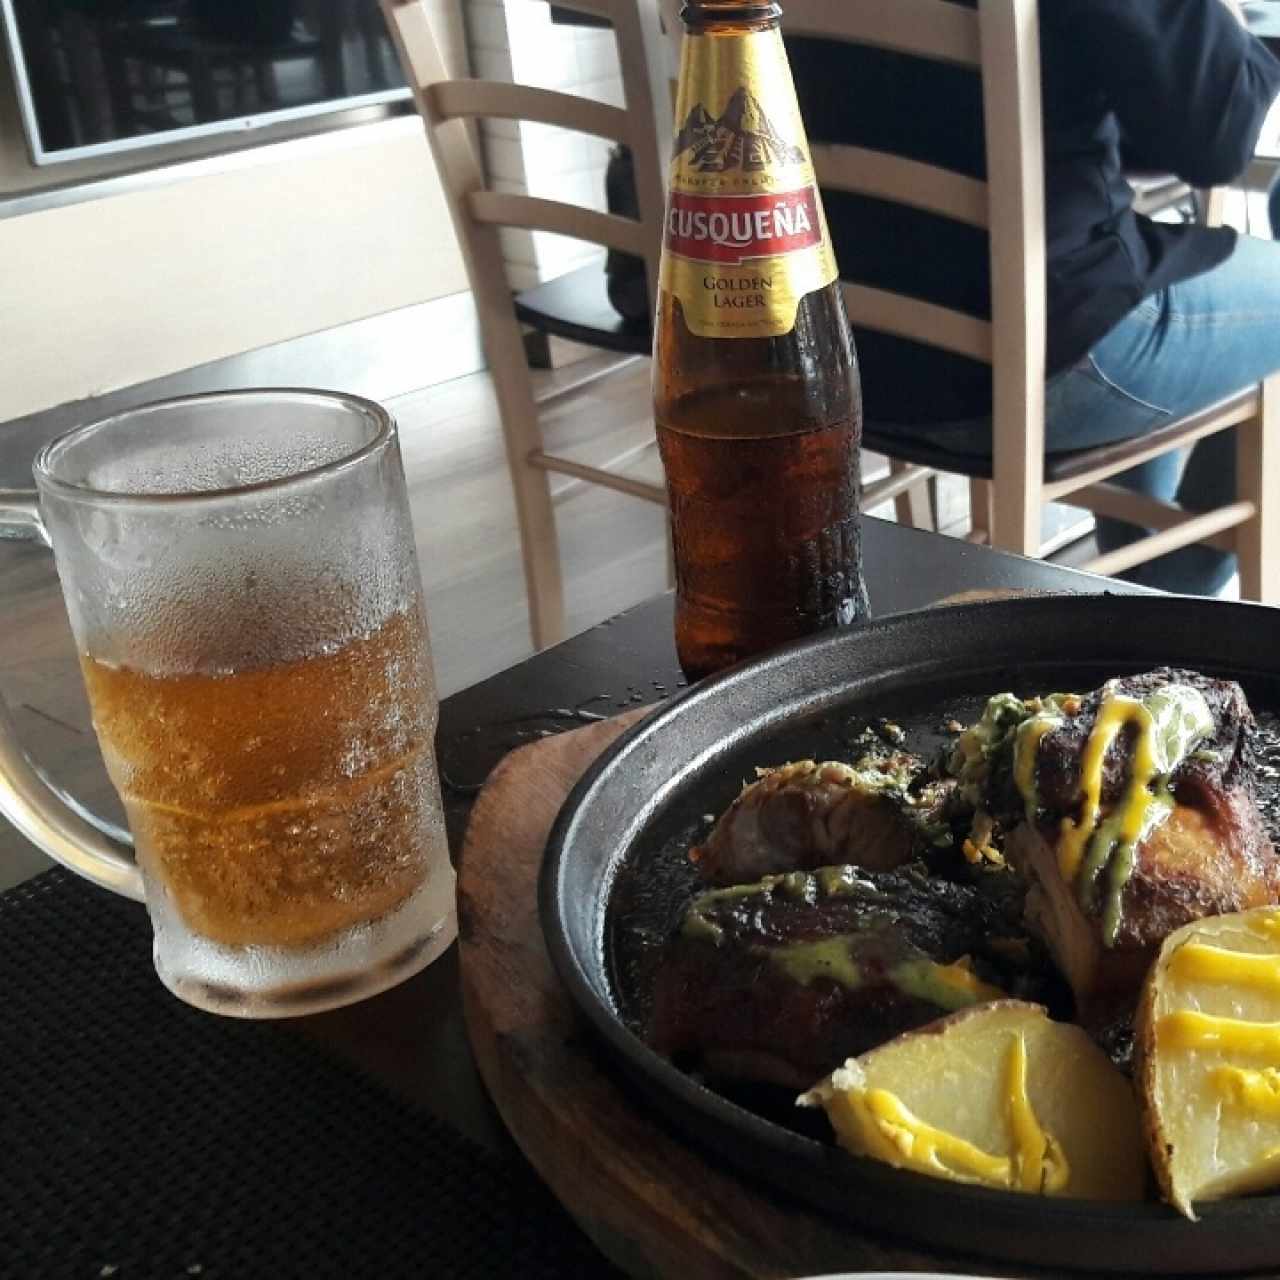 pollo peruano y cerveza cuzqueña